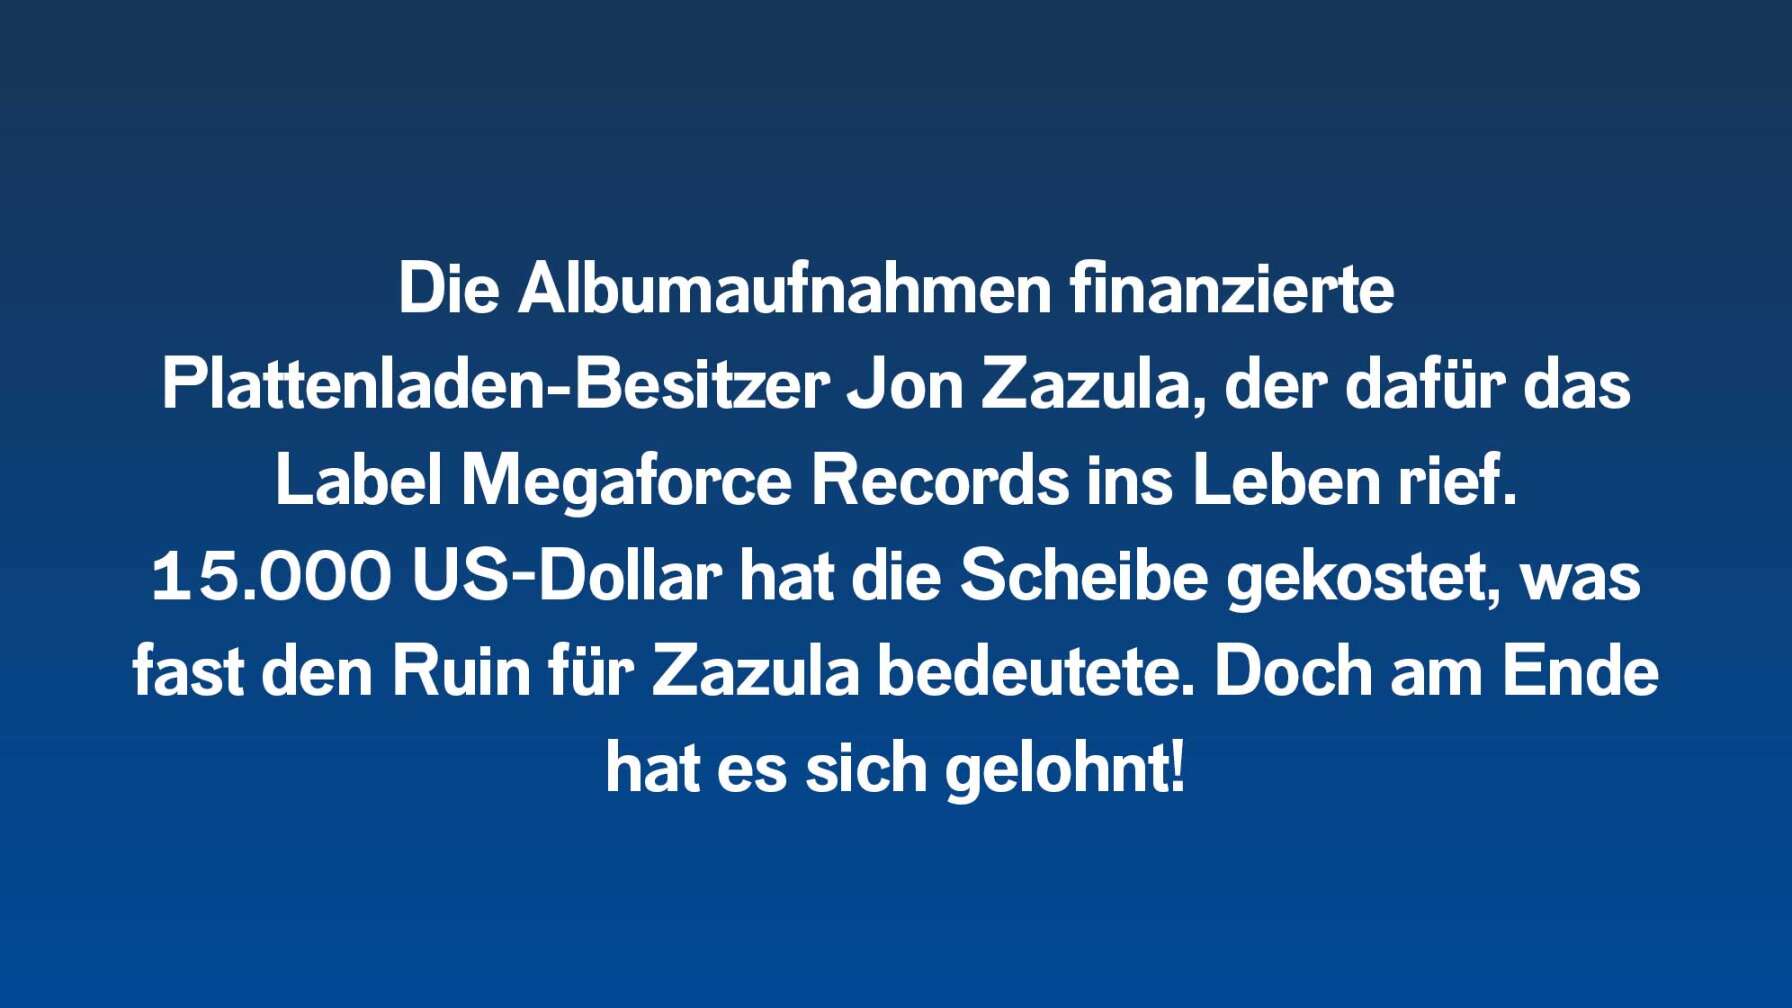 Die Albumaufnahmen finanzierte Plattenladen-Besitzer Jon Zazula, der dafür das Label Megaforce Records ins Leben rief. 15.000 US-Dollar hat die Scheibe gekostet, was fast den Ruin für Zazula bedeutete. Doch am Ende hat es sich gelohnt!